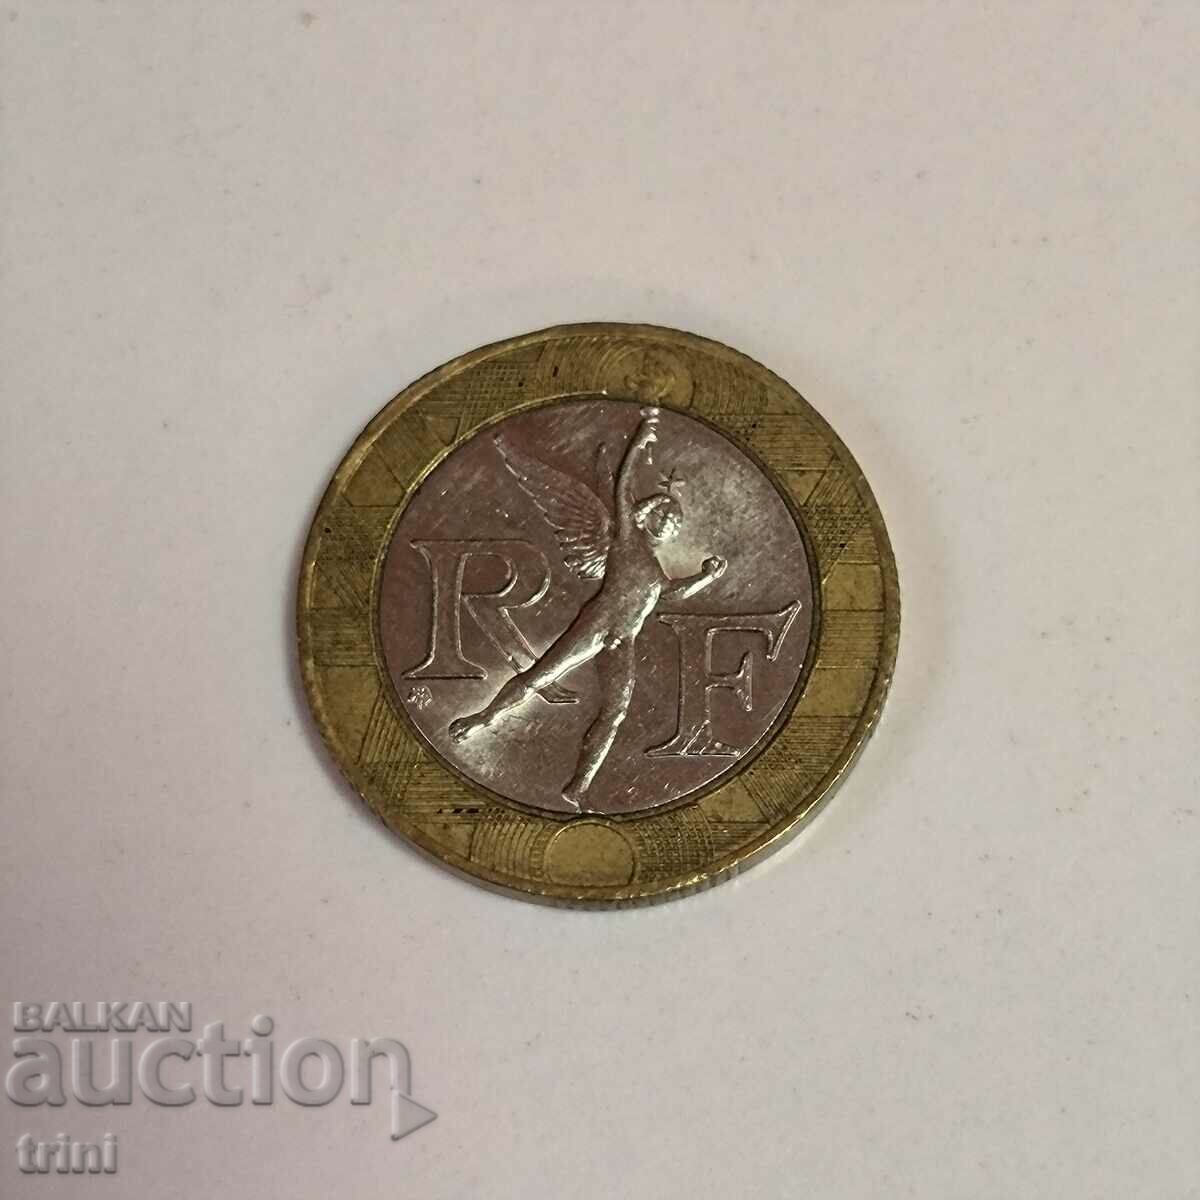 Franta 10 franci 1989 anul g35